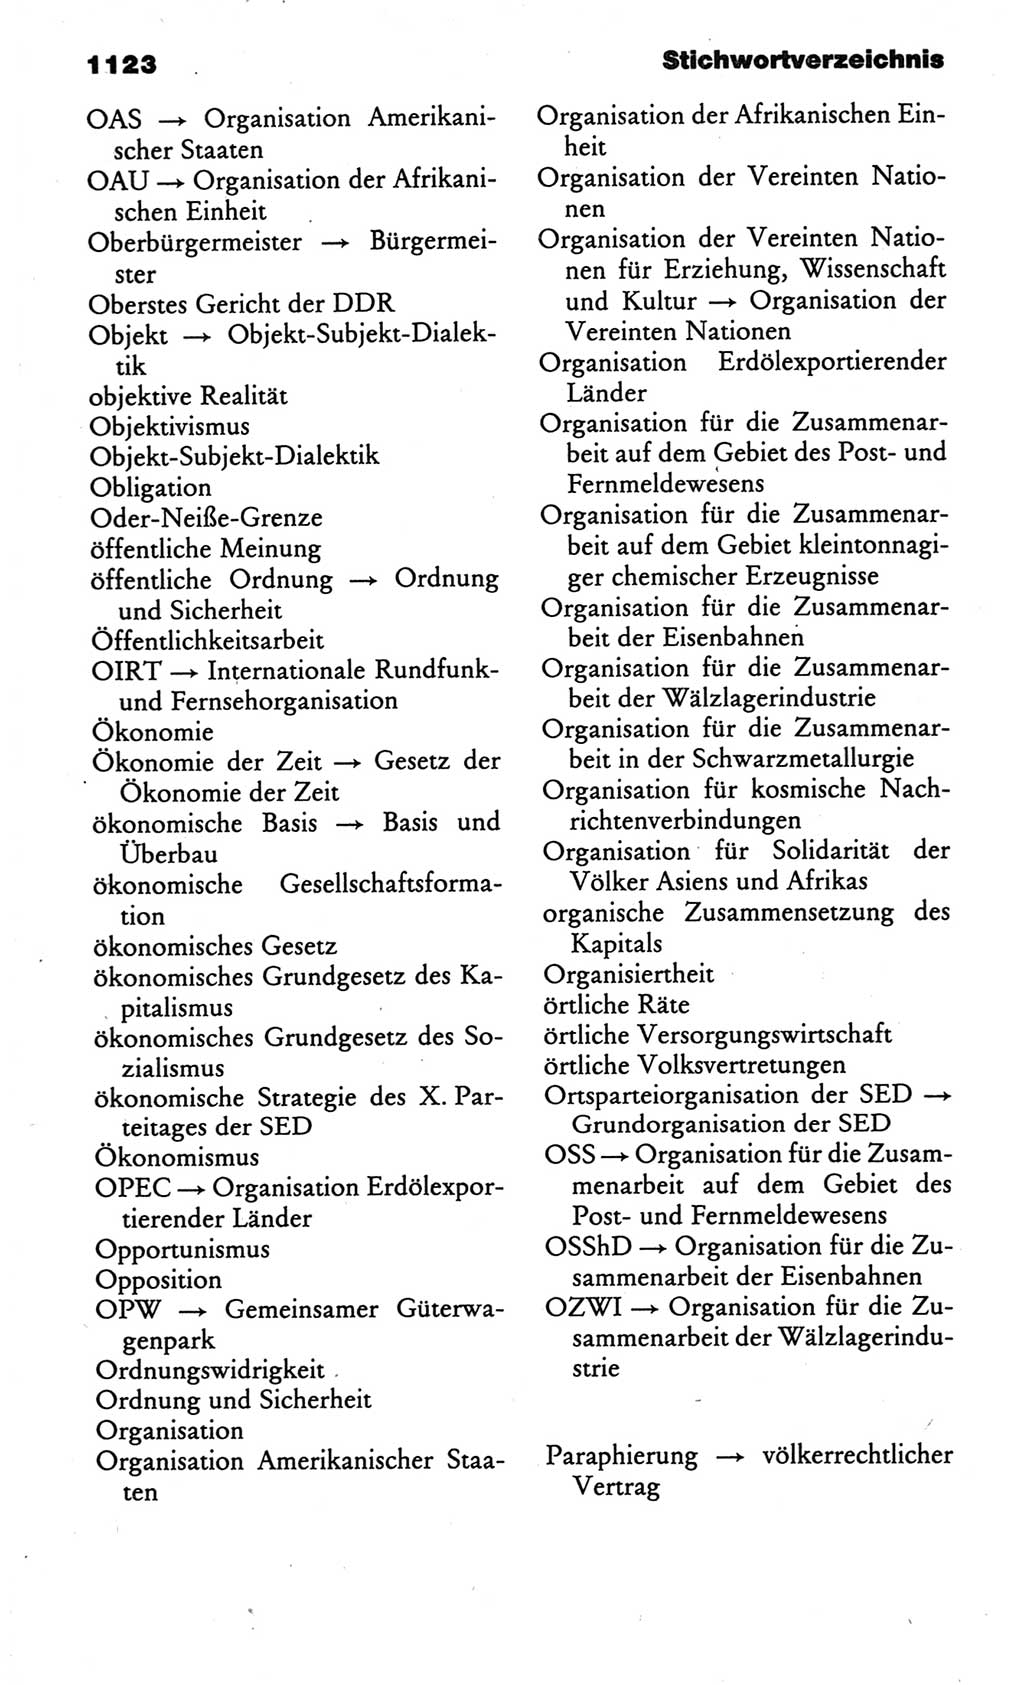 Kleines politisches Wörterbuch [Deutsche Demokratische Republik (DDR)] 1986, Seite 1123 (Kl. pol. Wb. DDR 1986, S. 1123)